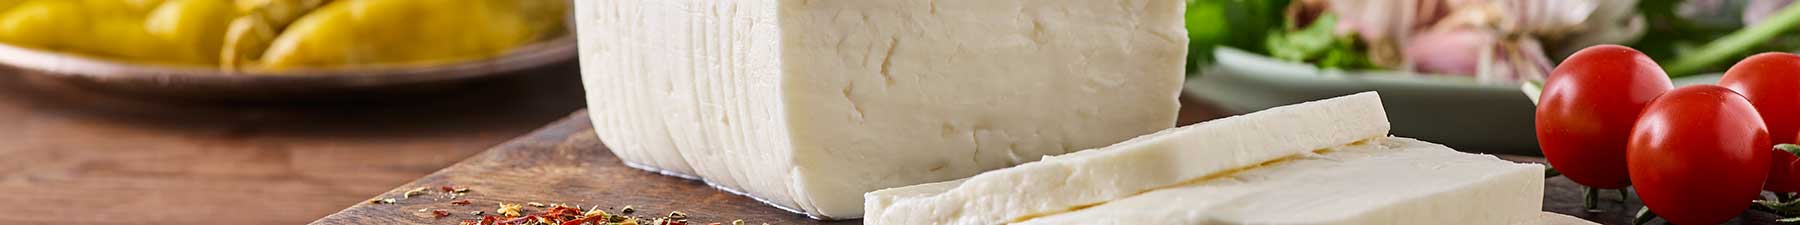 CH_Feta_White-brined-cheese